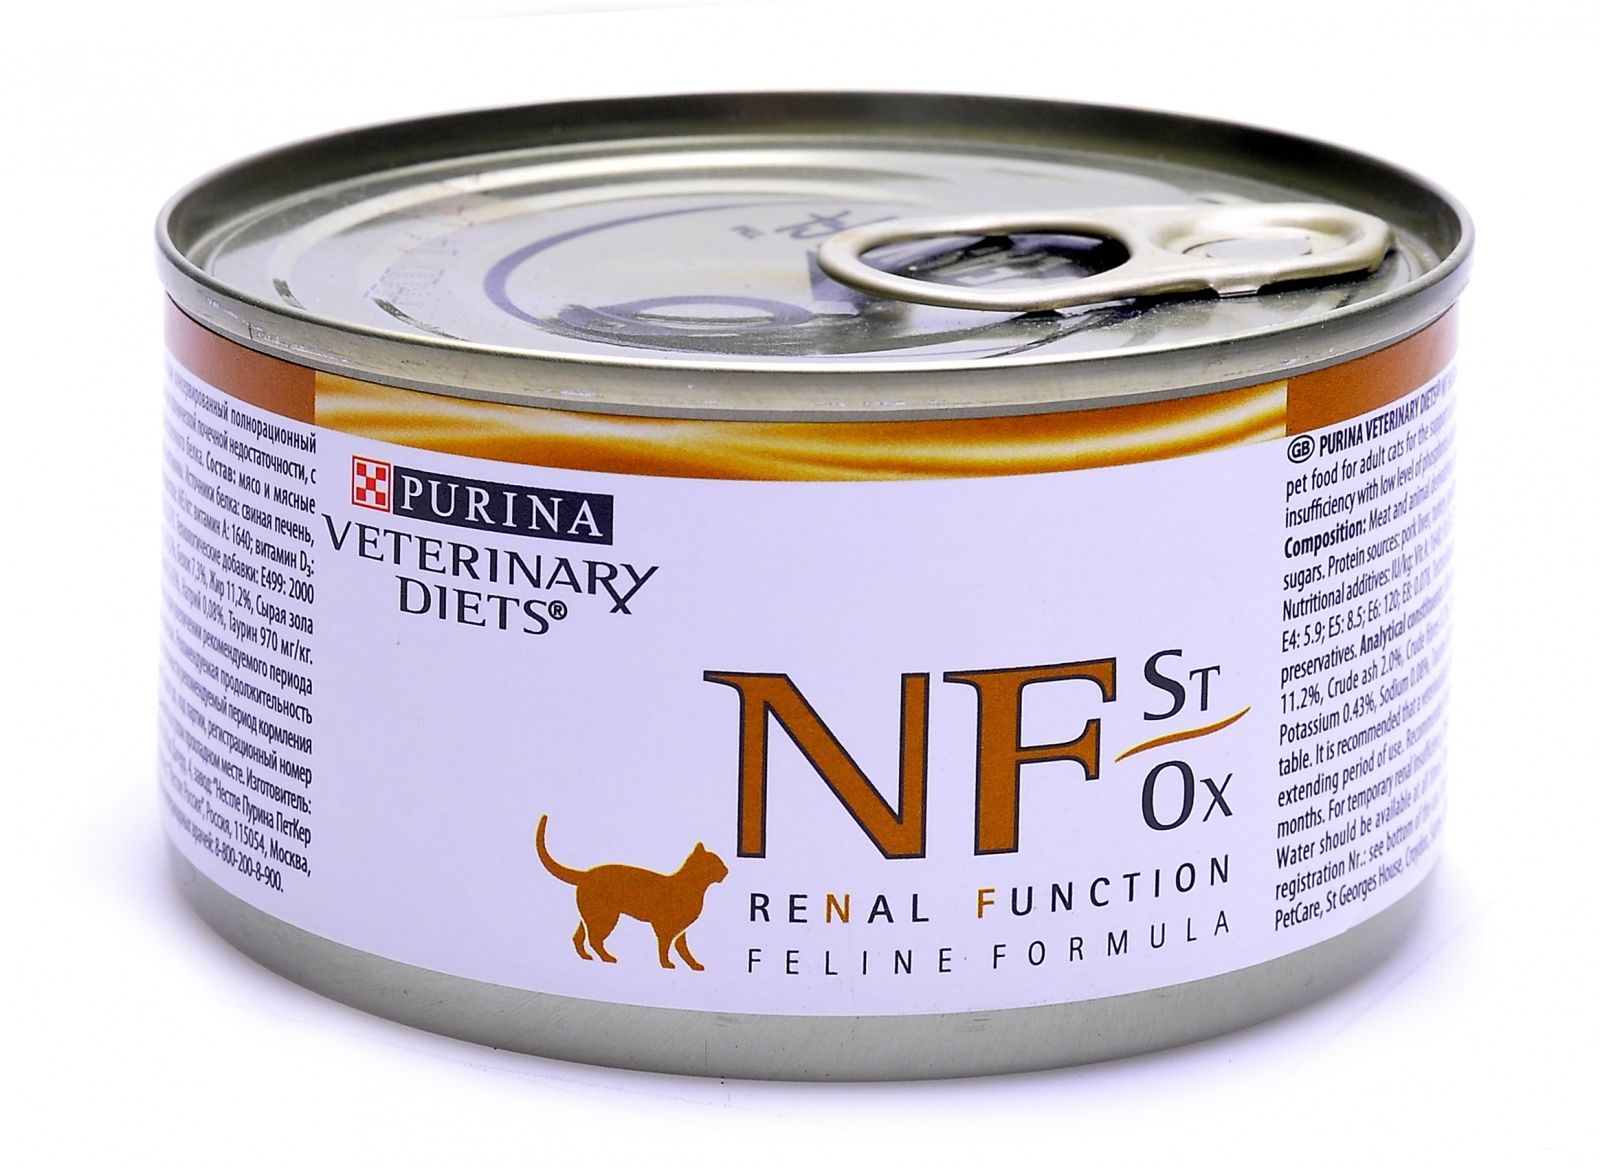 Почечный корм для кошек влажный. Purina NF renal консервы для кошек при патологии почек 195 г. Корм про план НФ для кошек консервы. Пурина влажный корм renal NF. Ренал для кошек корм для кошек консервы.